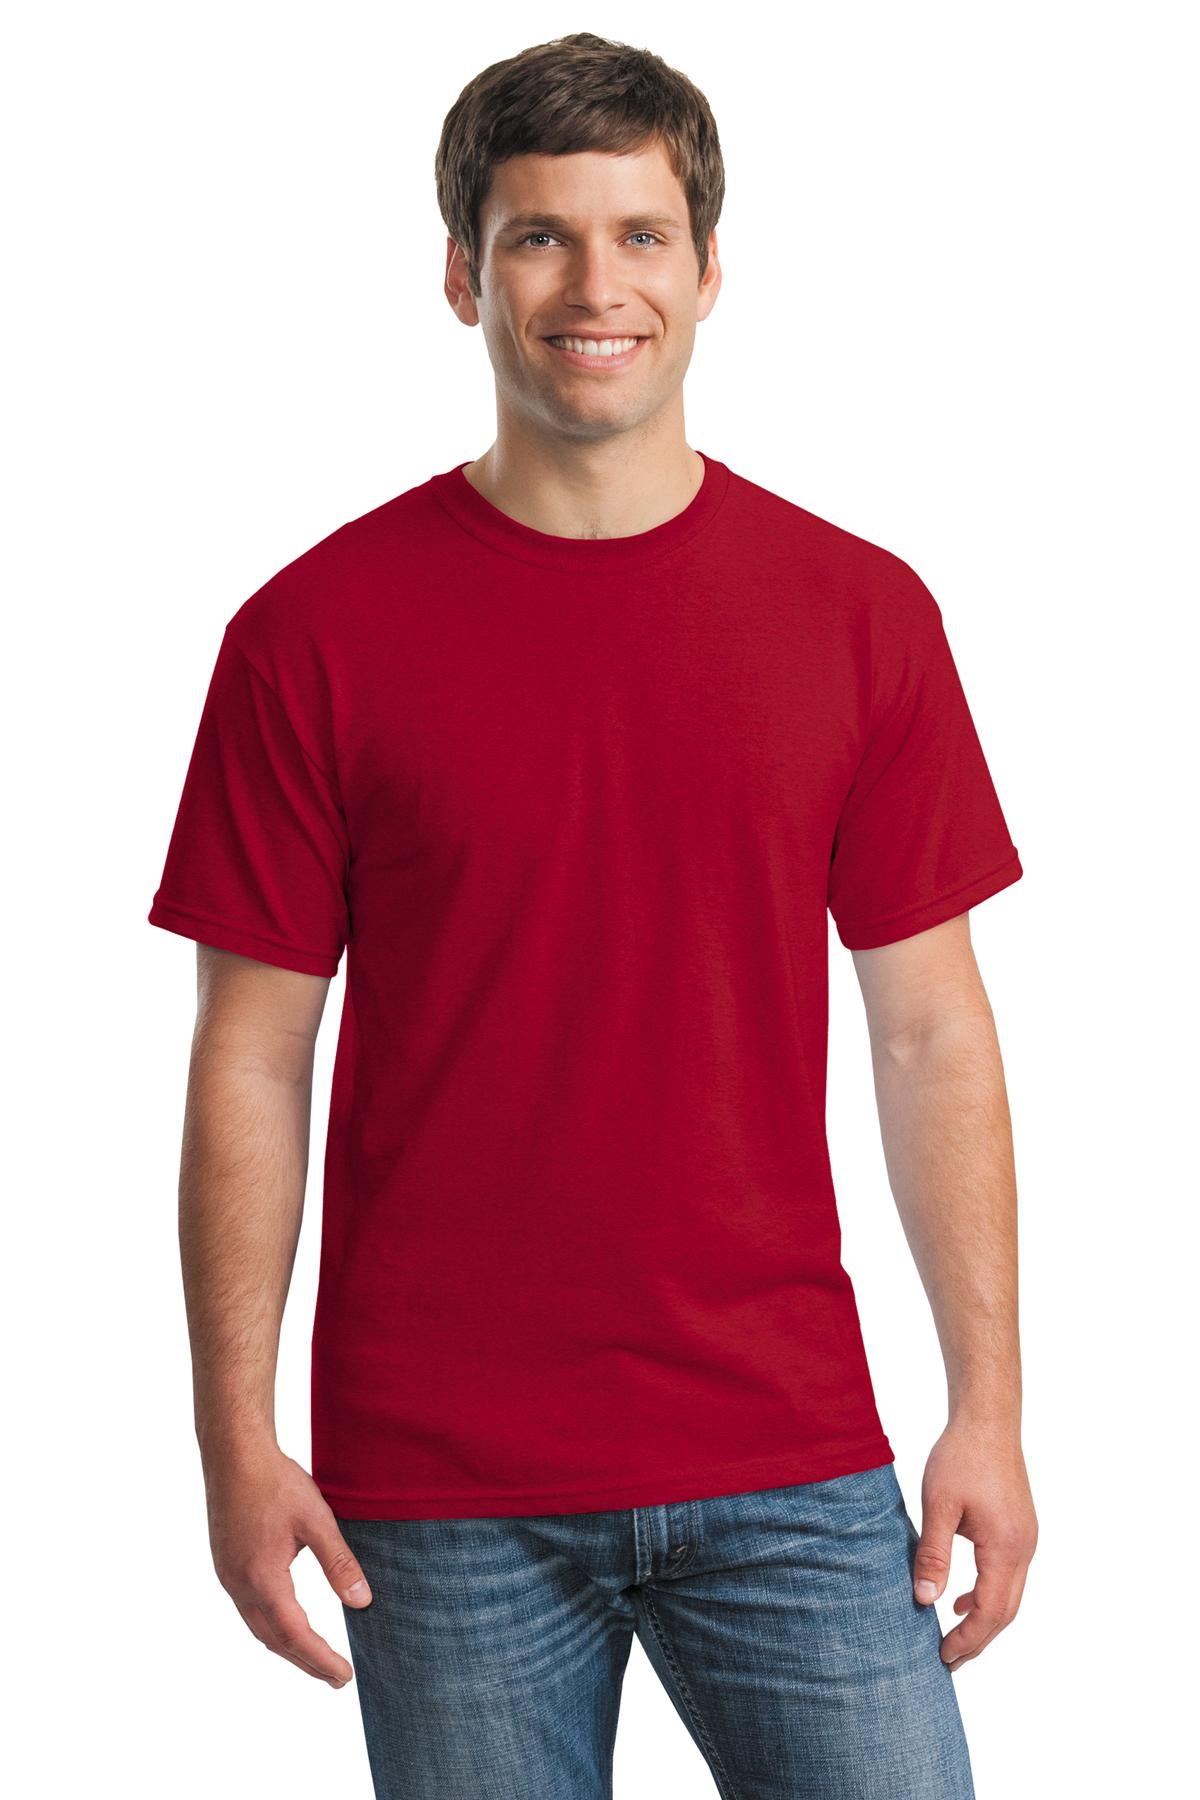 Gildan® - Heavy Cotton™ 100% Cotton T-Shirt. 5000 [Antique Cherry Red] - DFW Impression